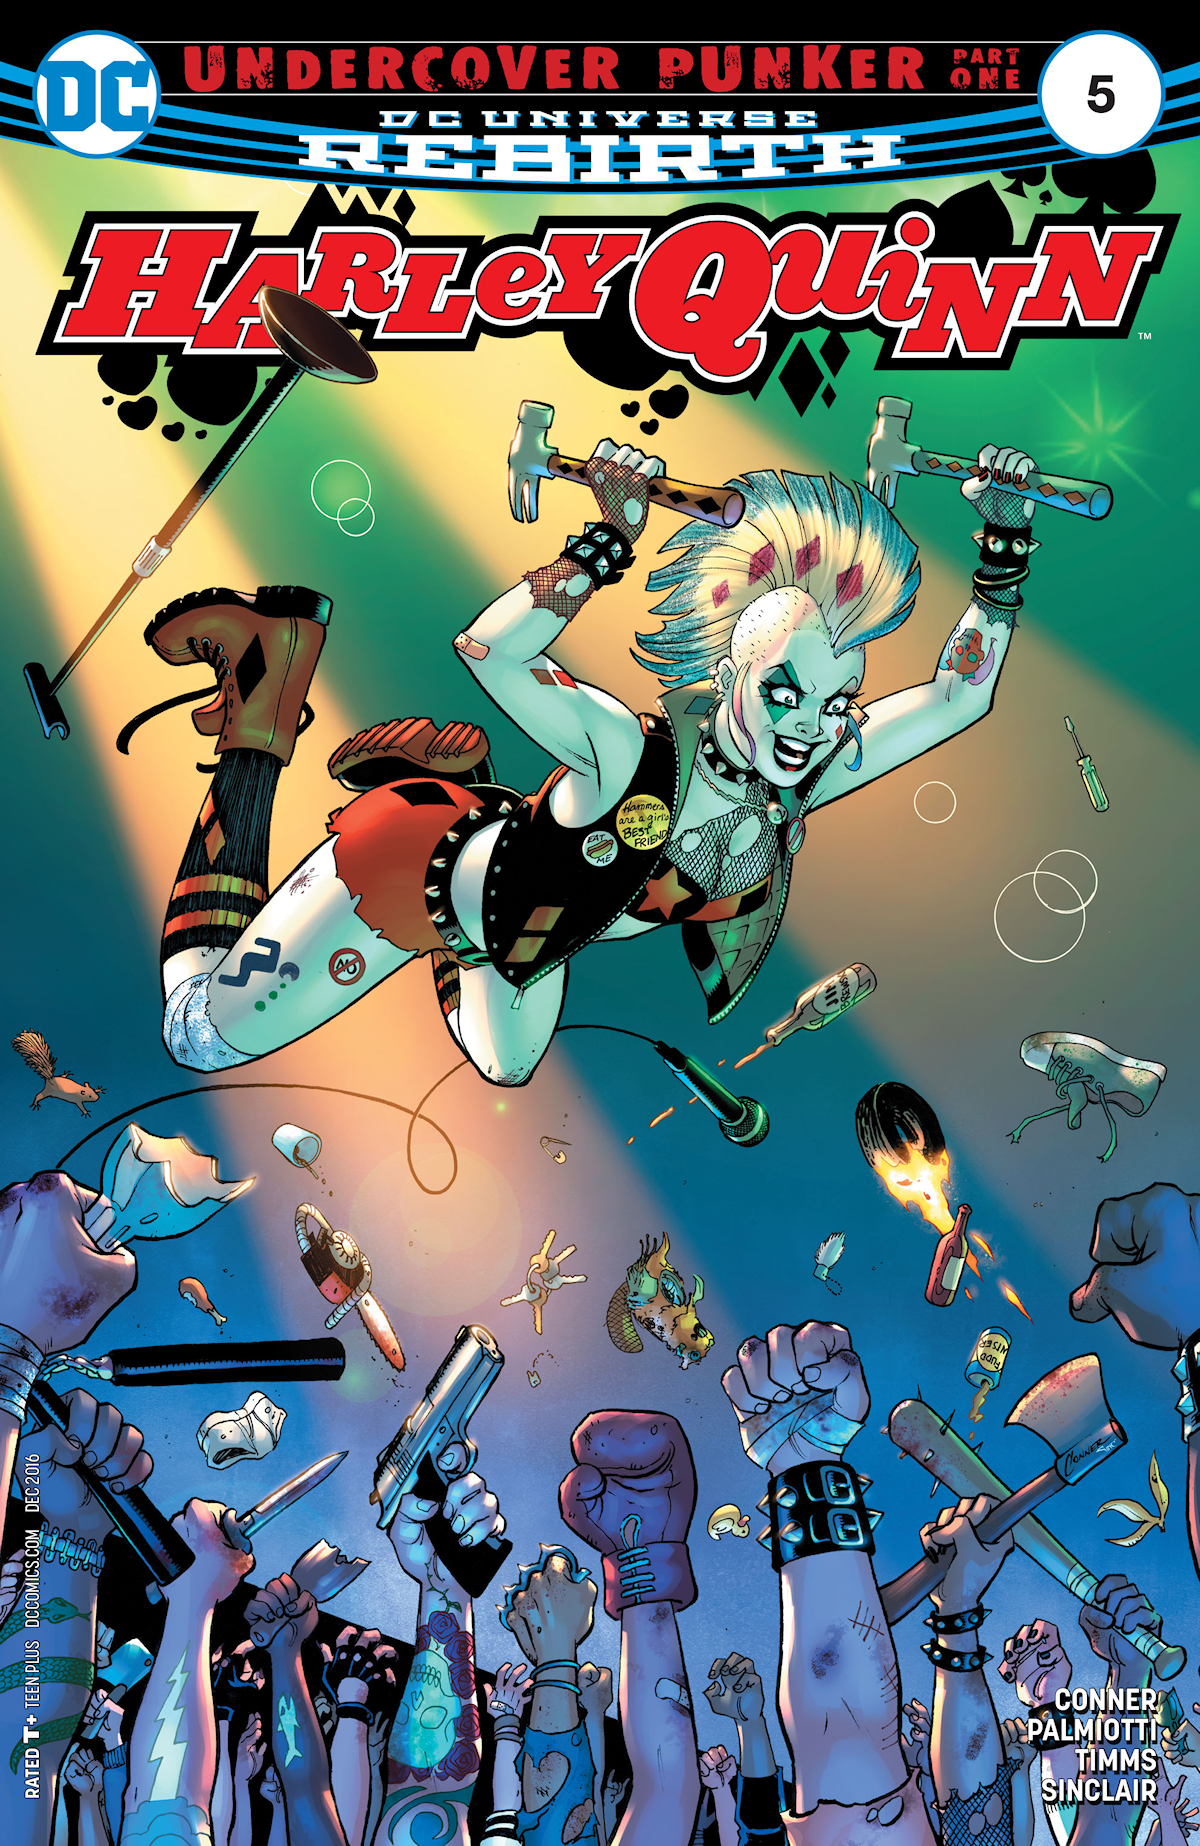 Harley Quinn Vol. 3 5 (Cover A)